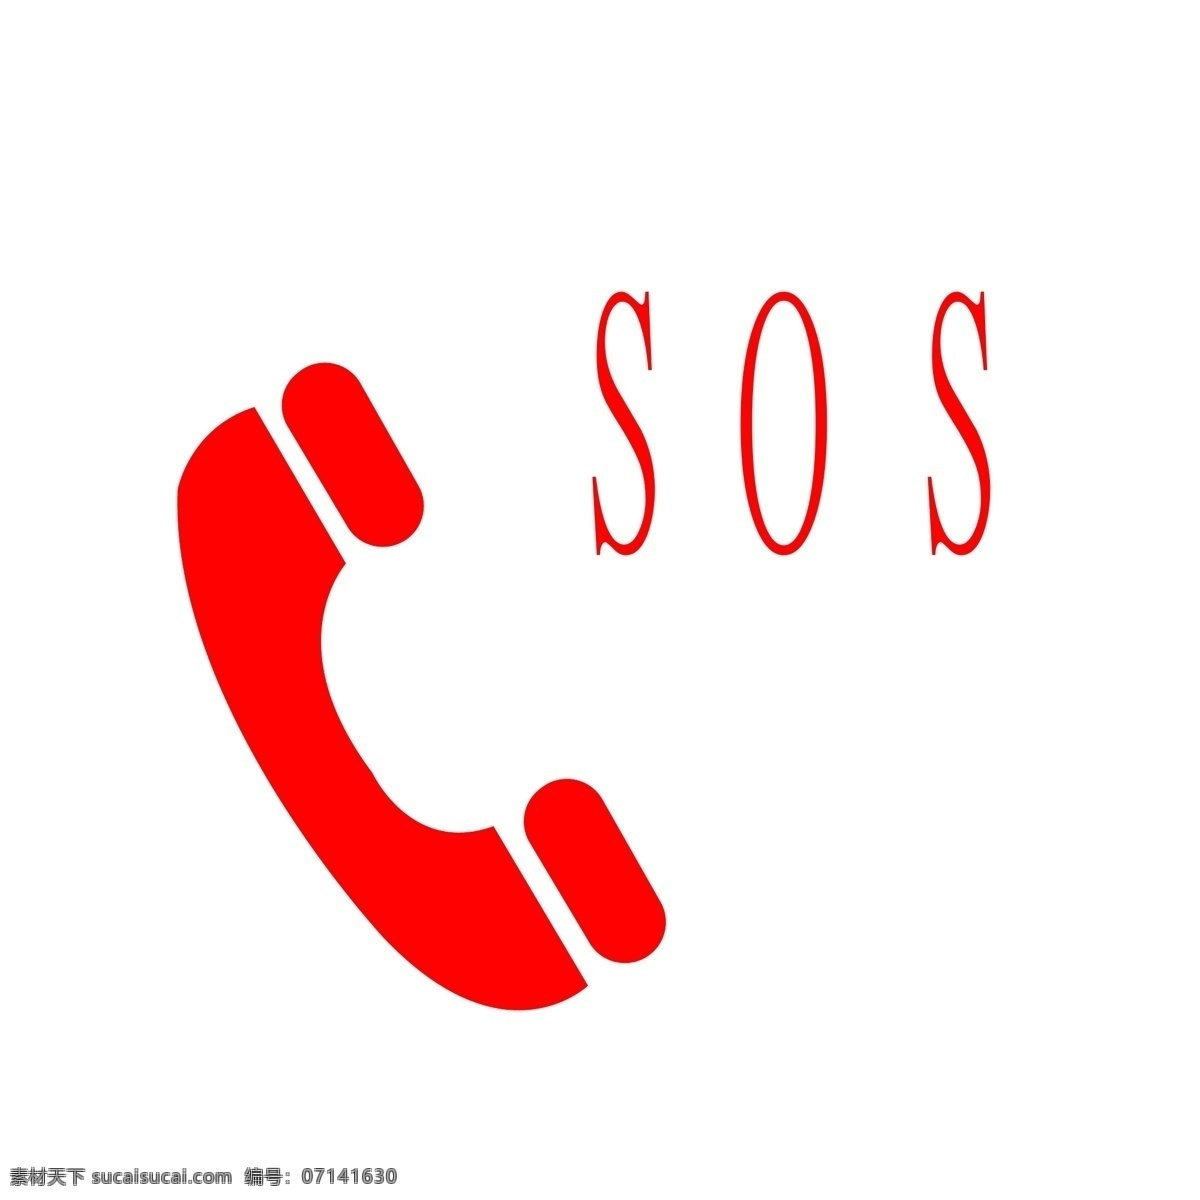 救援标志 紧急呼叫 救命标识 需要帮助 沉着对待 冷静面对 电话